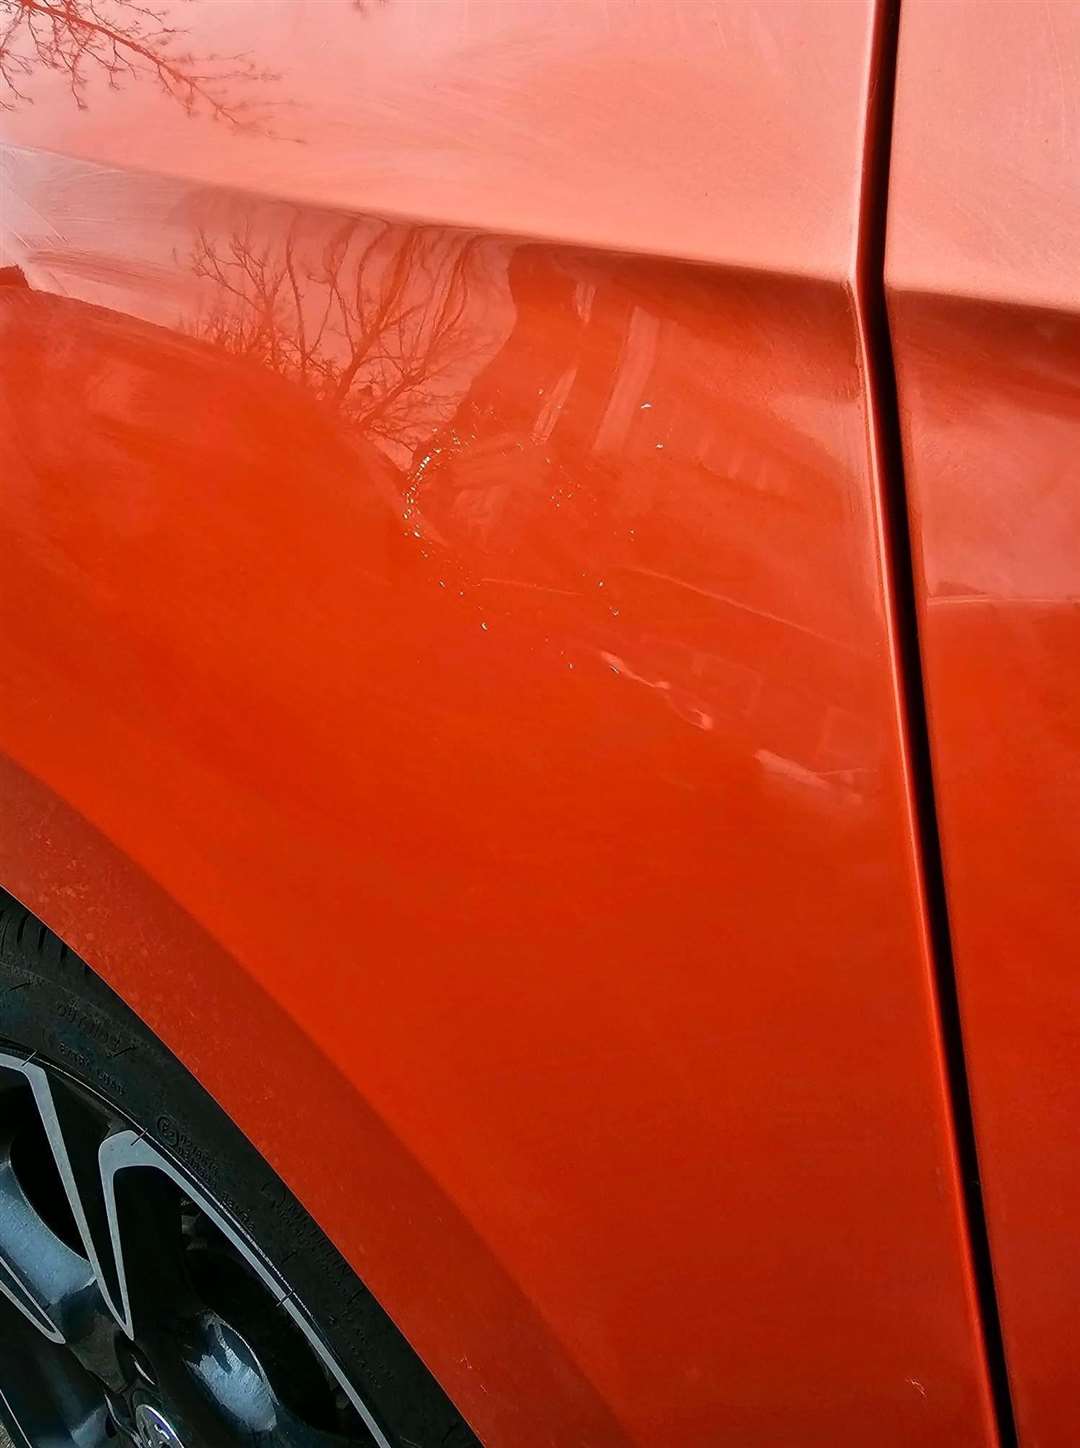 Sian's orange Vauxhall Corsa was damaged on Ingress Park Avenue